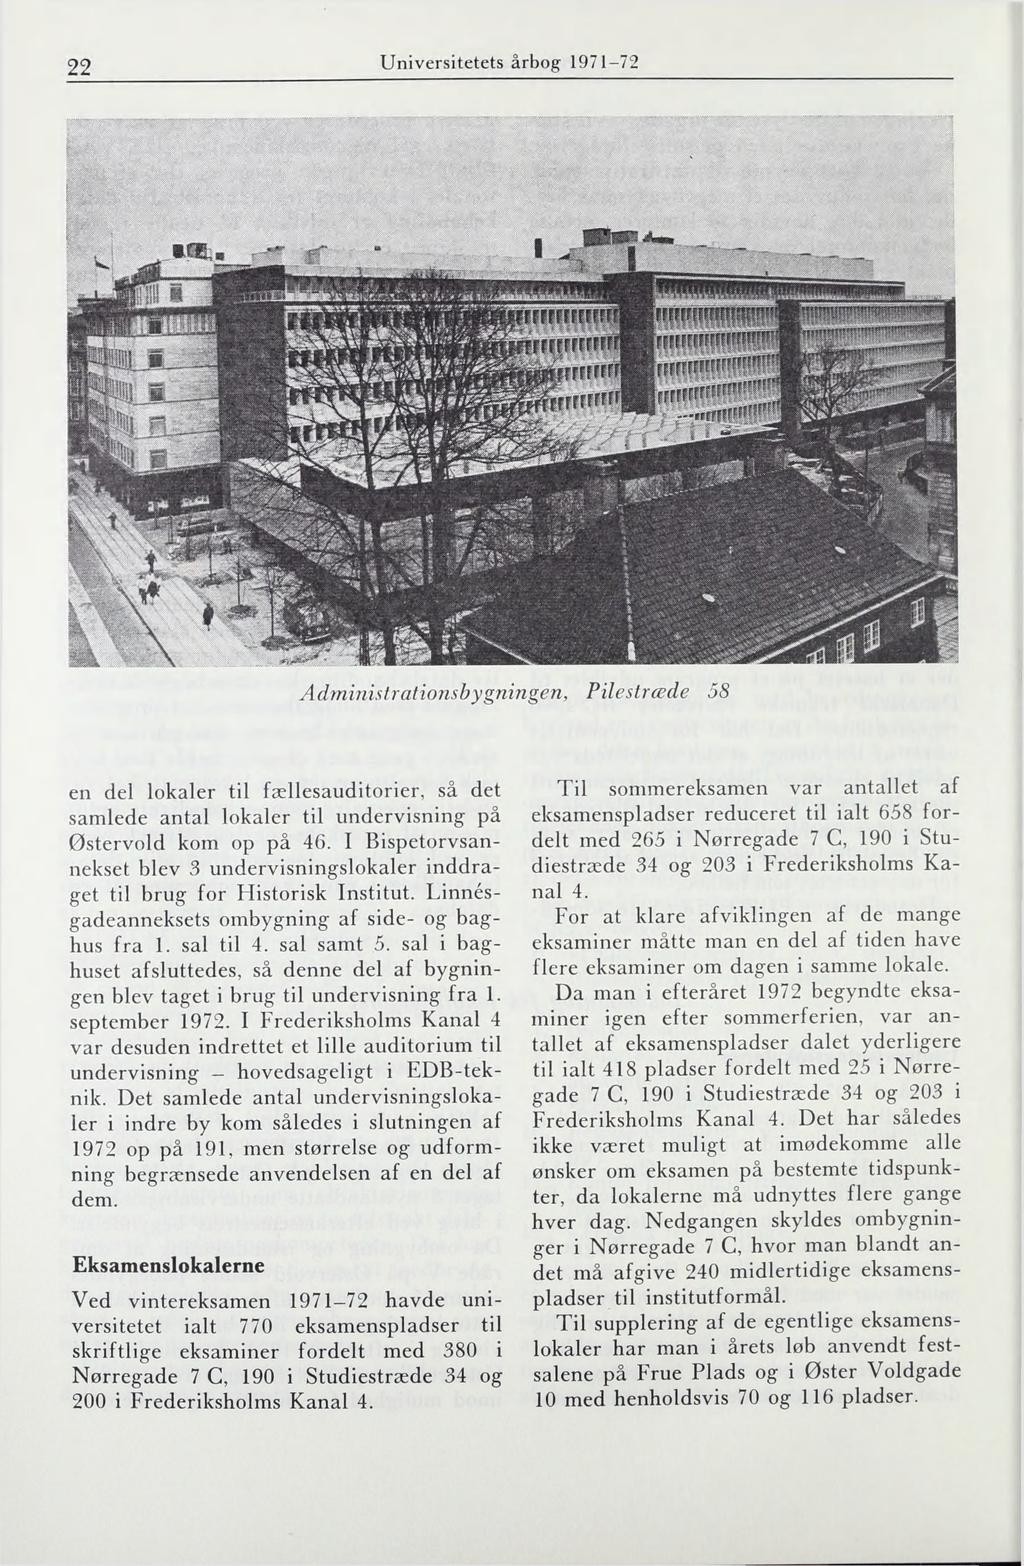 22 Universitetets årbog 1971-72 Administrationsbygningen, Pilestræde 58 en del lokaler til fællesauditorier, så det samlede antal lokaler til undervisning på Østervold kom op på 46.